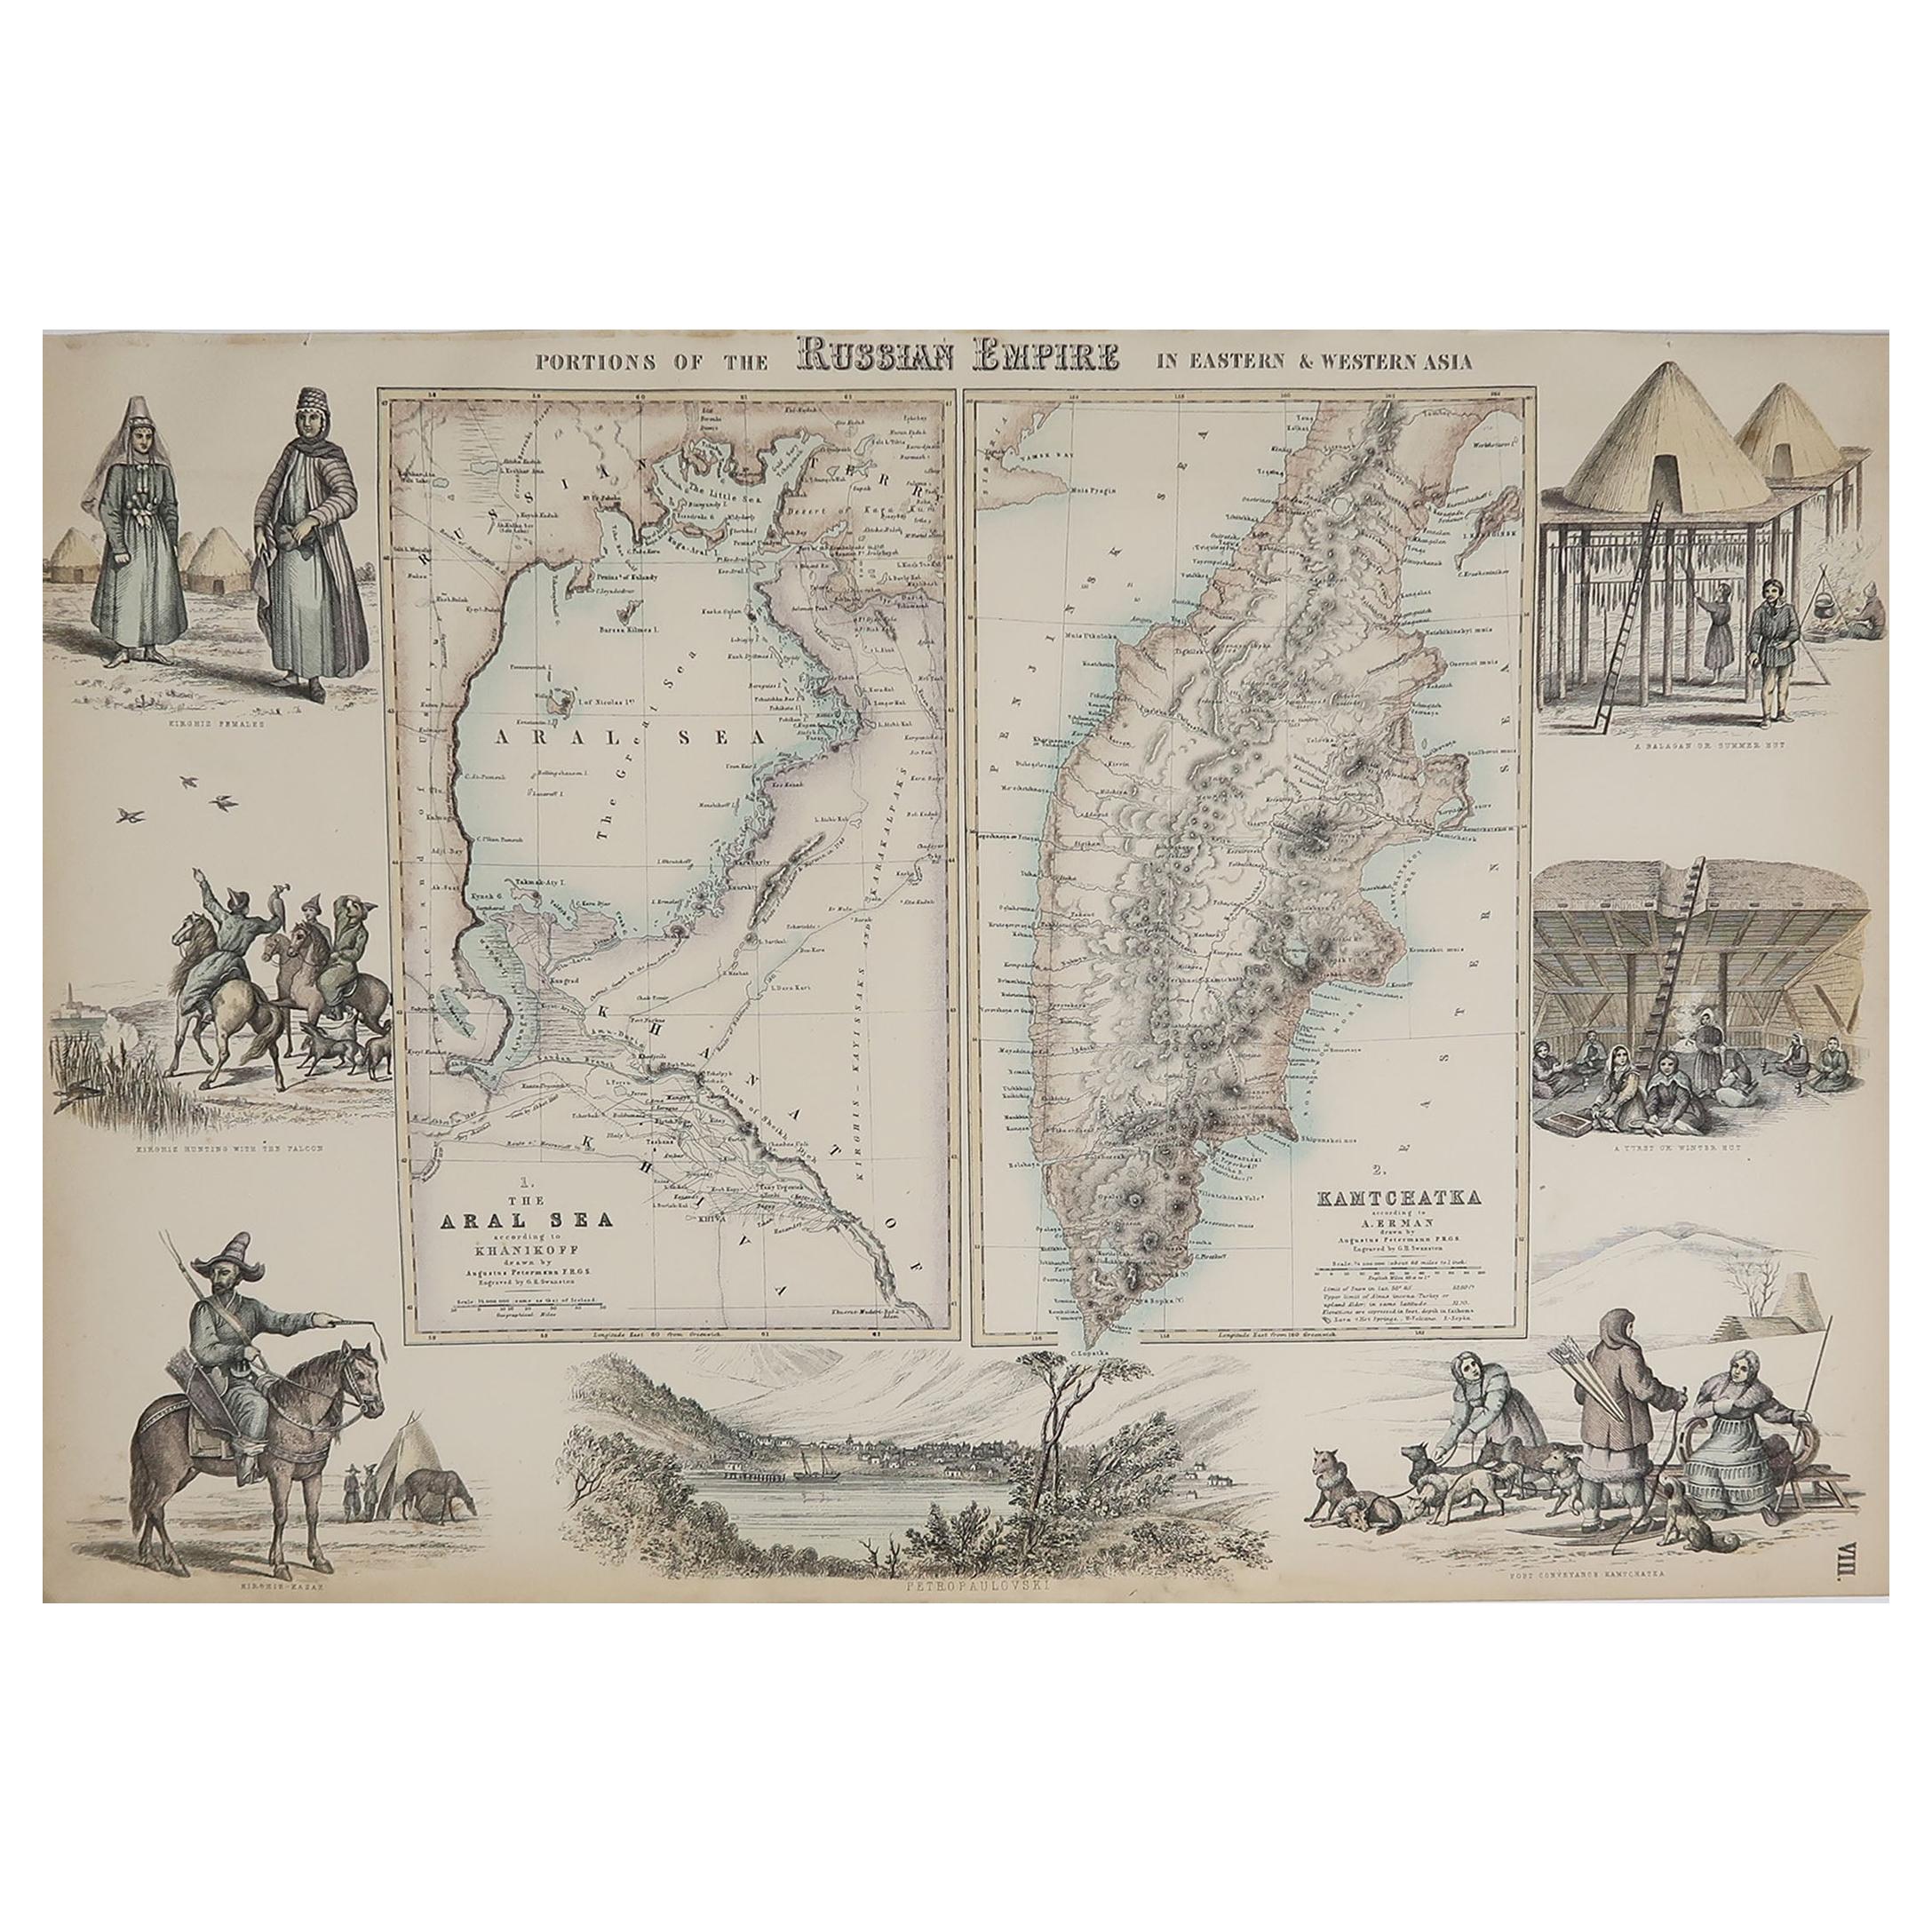 Original Antique Decorative Map of Russia / Kamchatka, Fullarton, C.1870